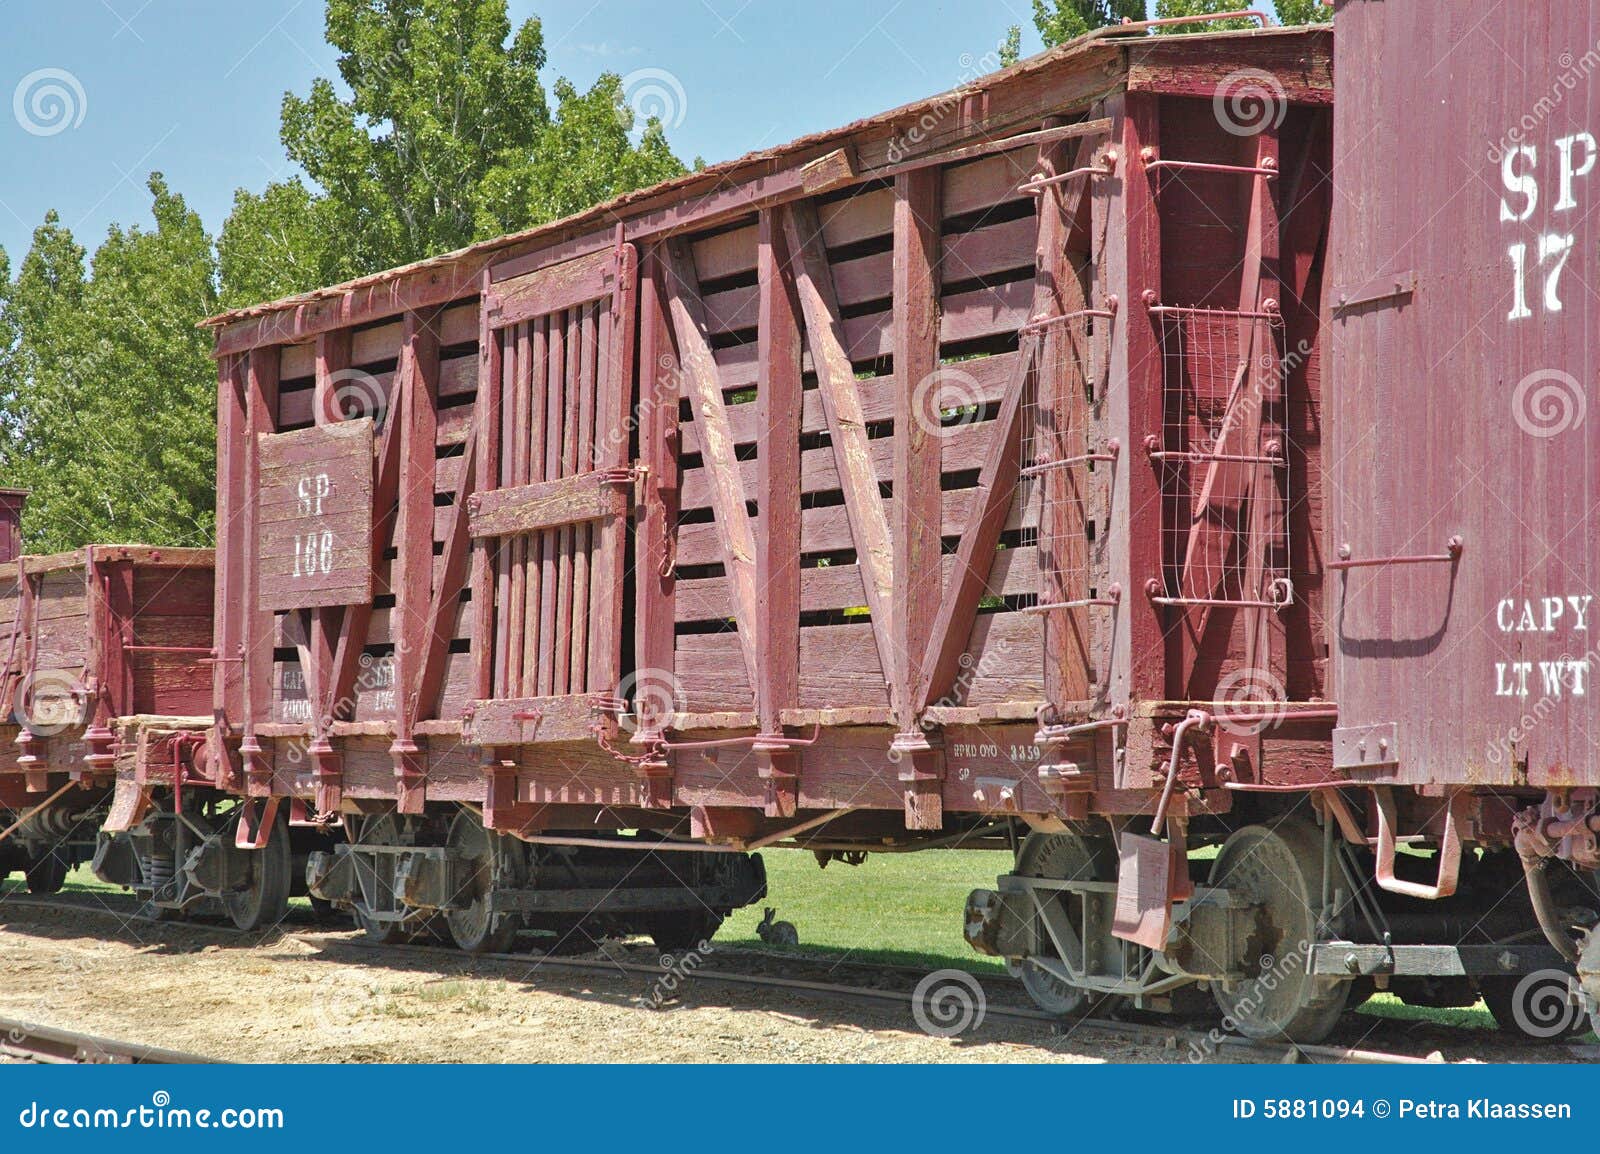 old railroad boxcar